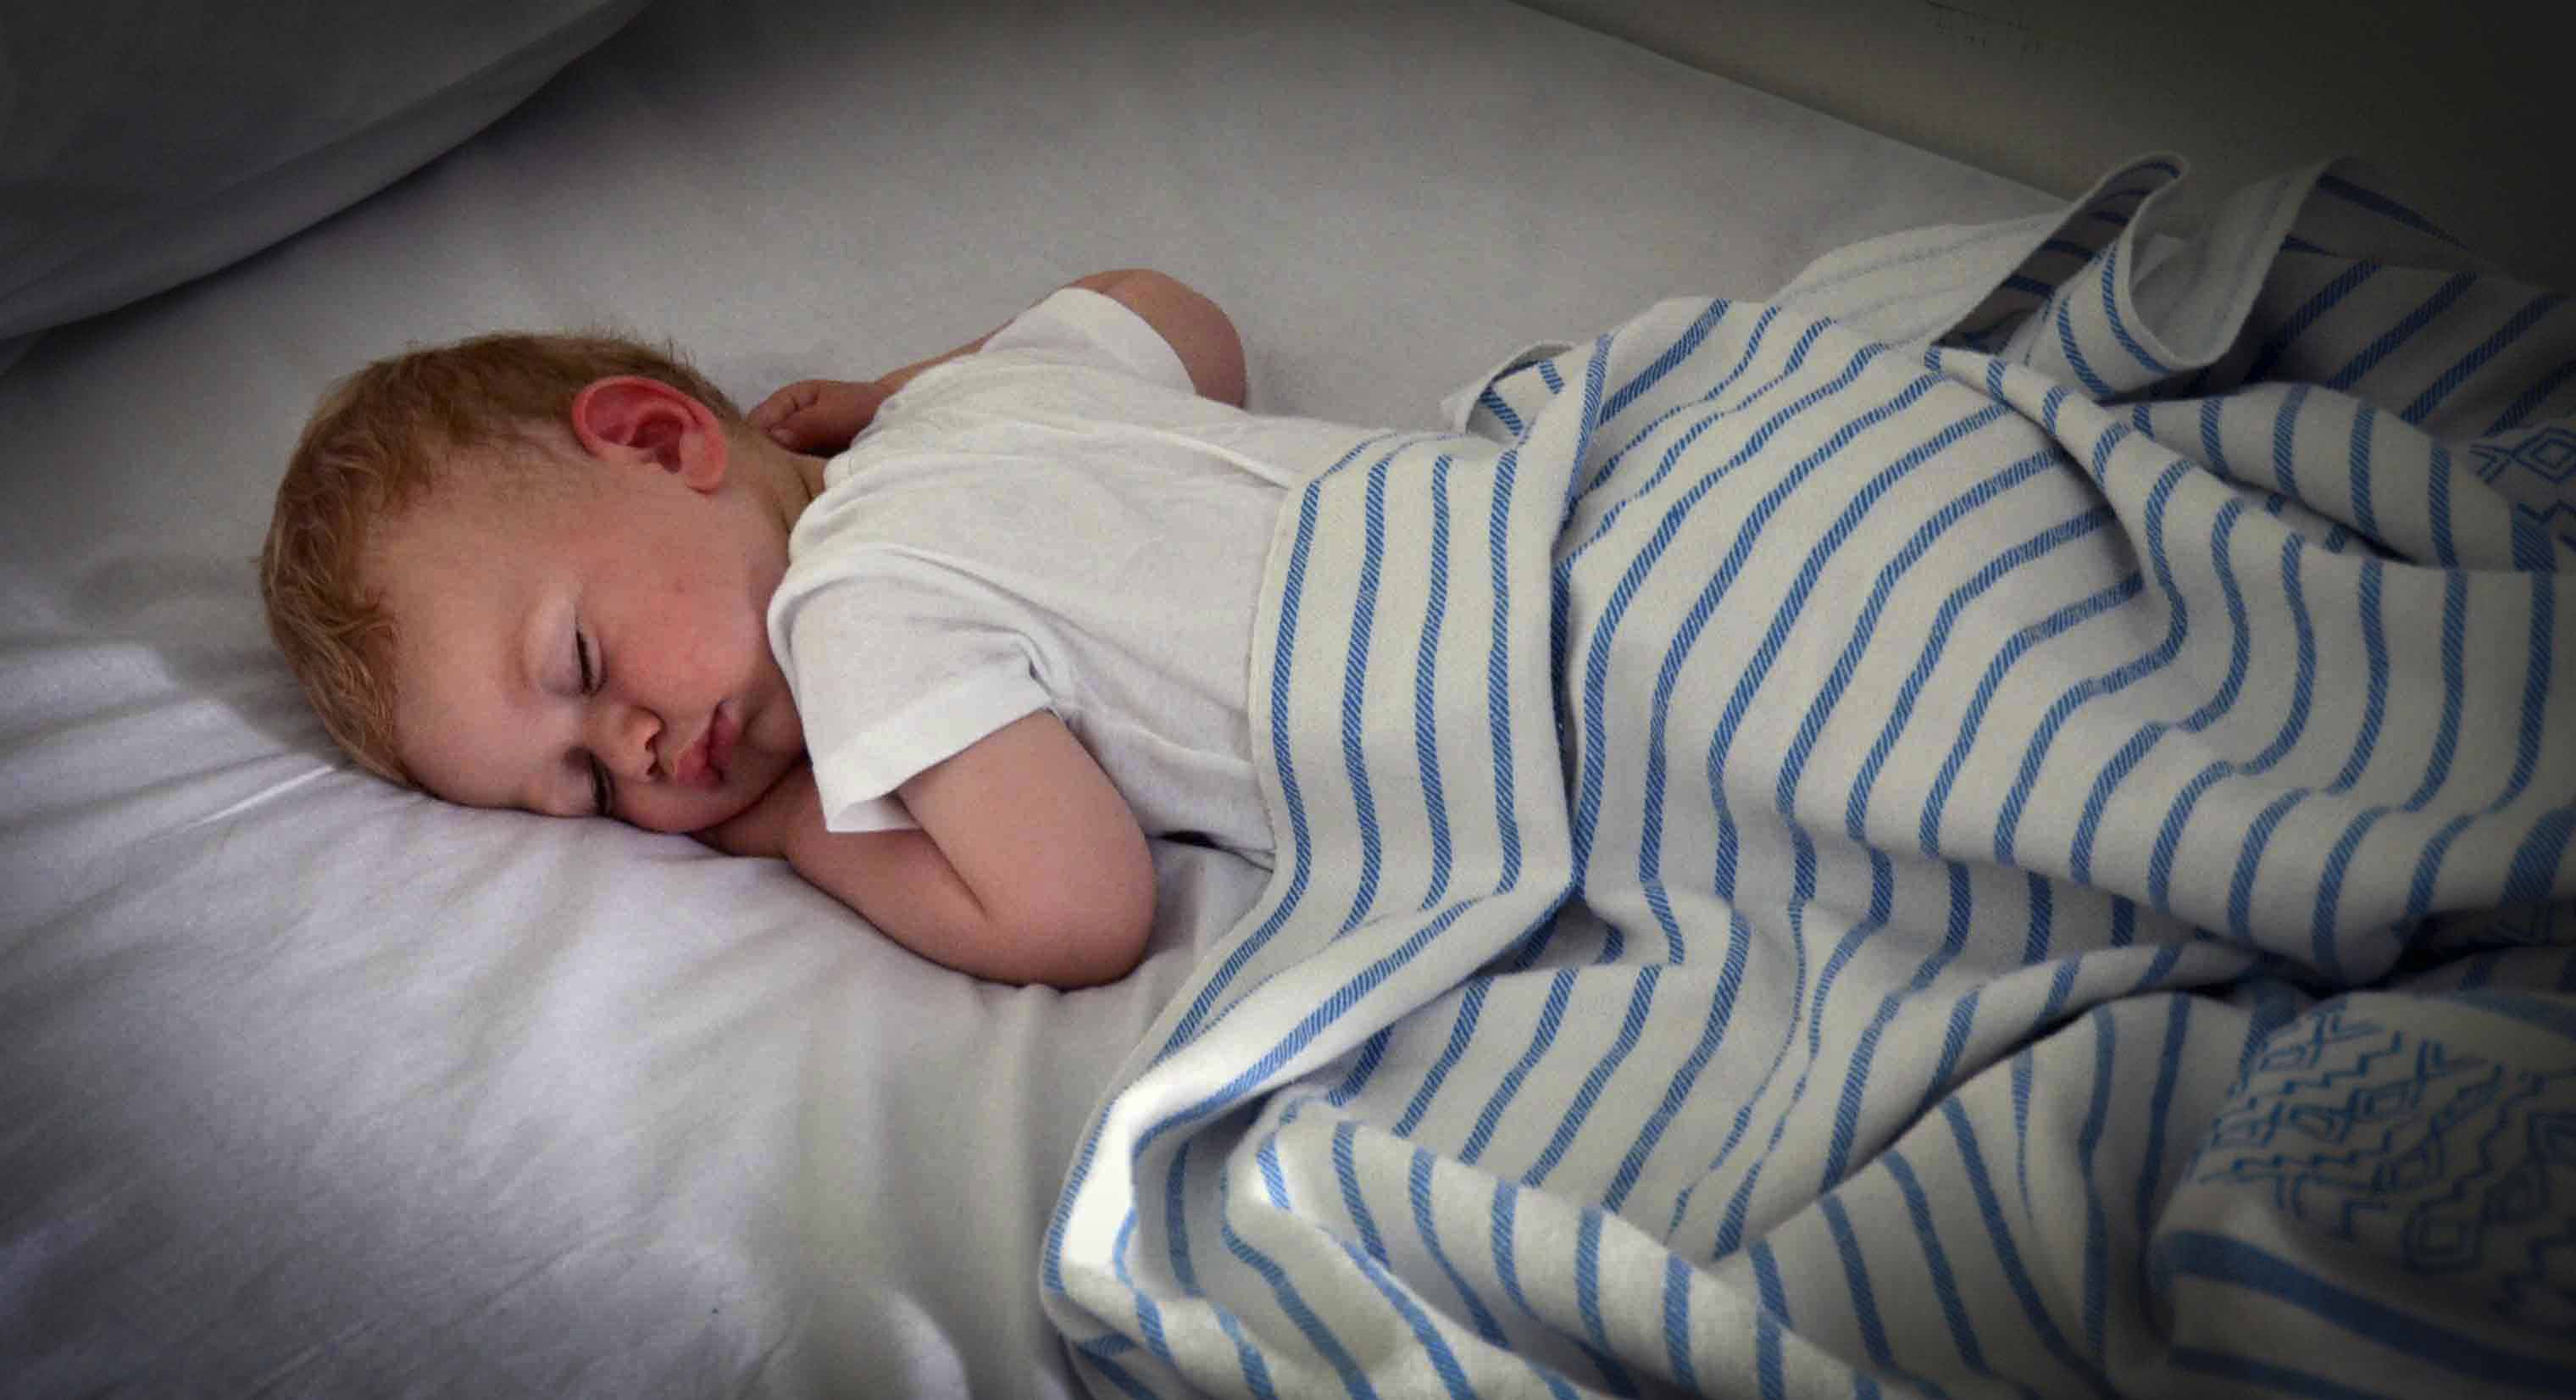 في أي وقت يجب أن يذهب طفلك للنوم؟ الدليل العملي حسب السن.